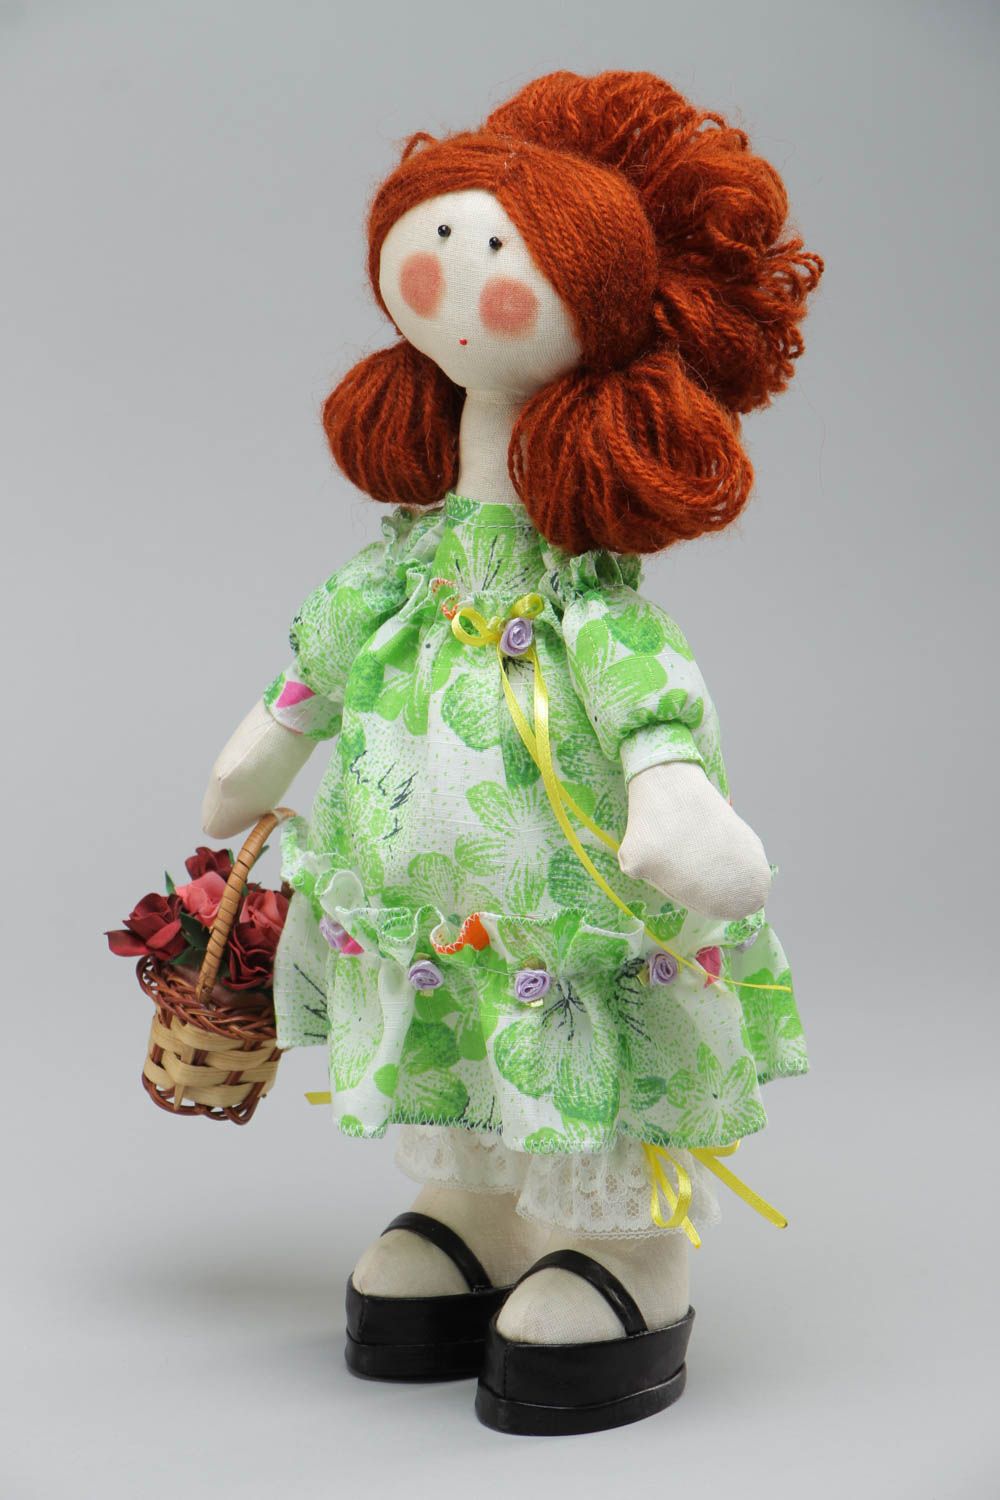 Игрушка кукла из ткани в платье смешная с корзинкой милая небольшая хэнд мейд  фото 2